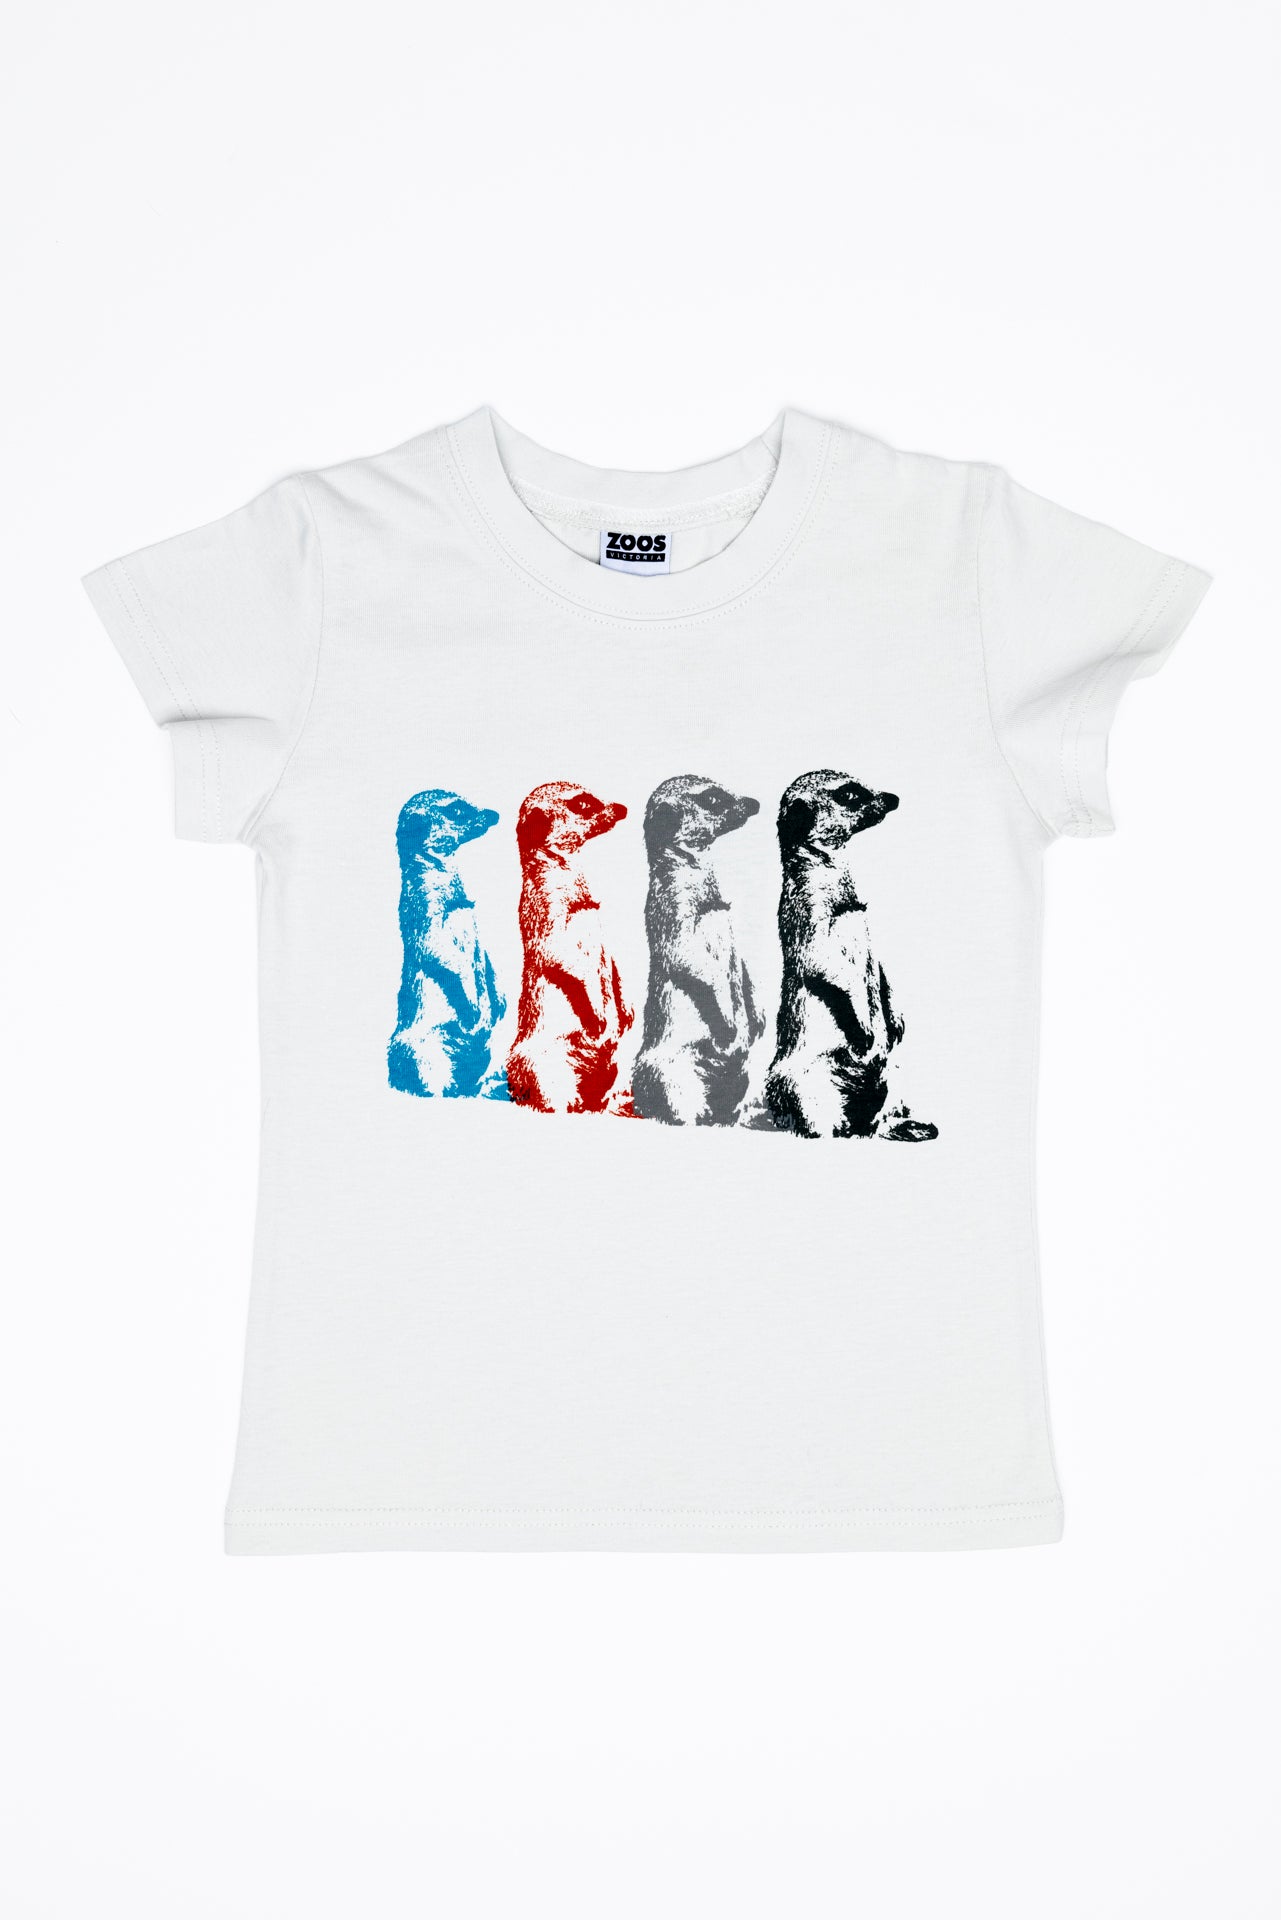 T-Shirt Meerkat Pop Art Short Sleeve Kids